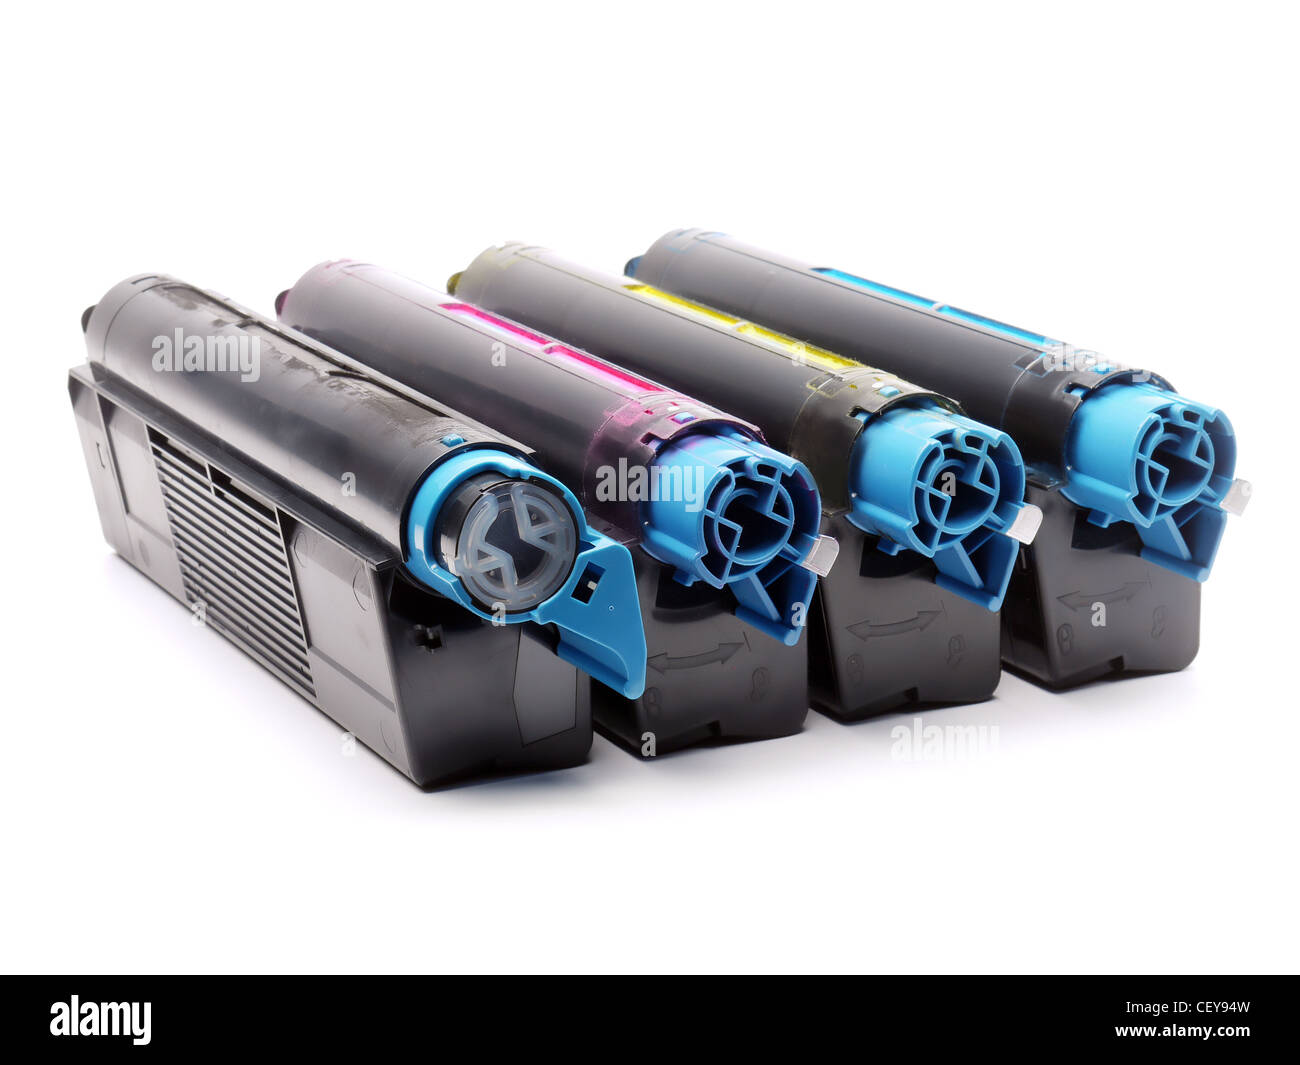 Quatre cartouches de toner imprimante laser de Cyan, Magenta, Jaune et Noir tourné sur fond blanc Banque D'Images